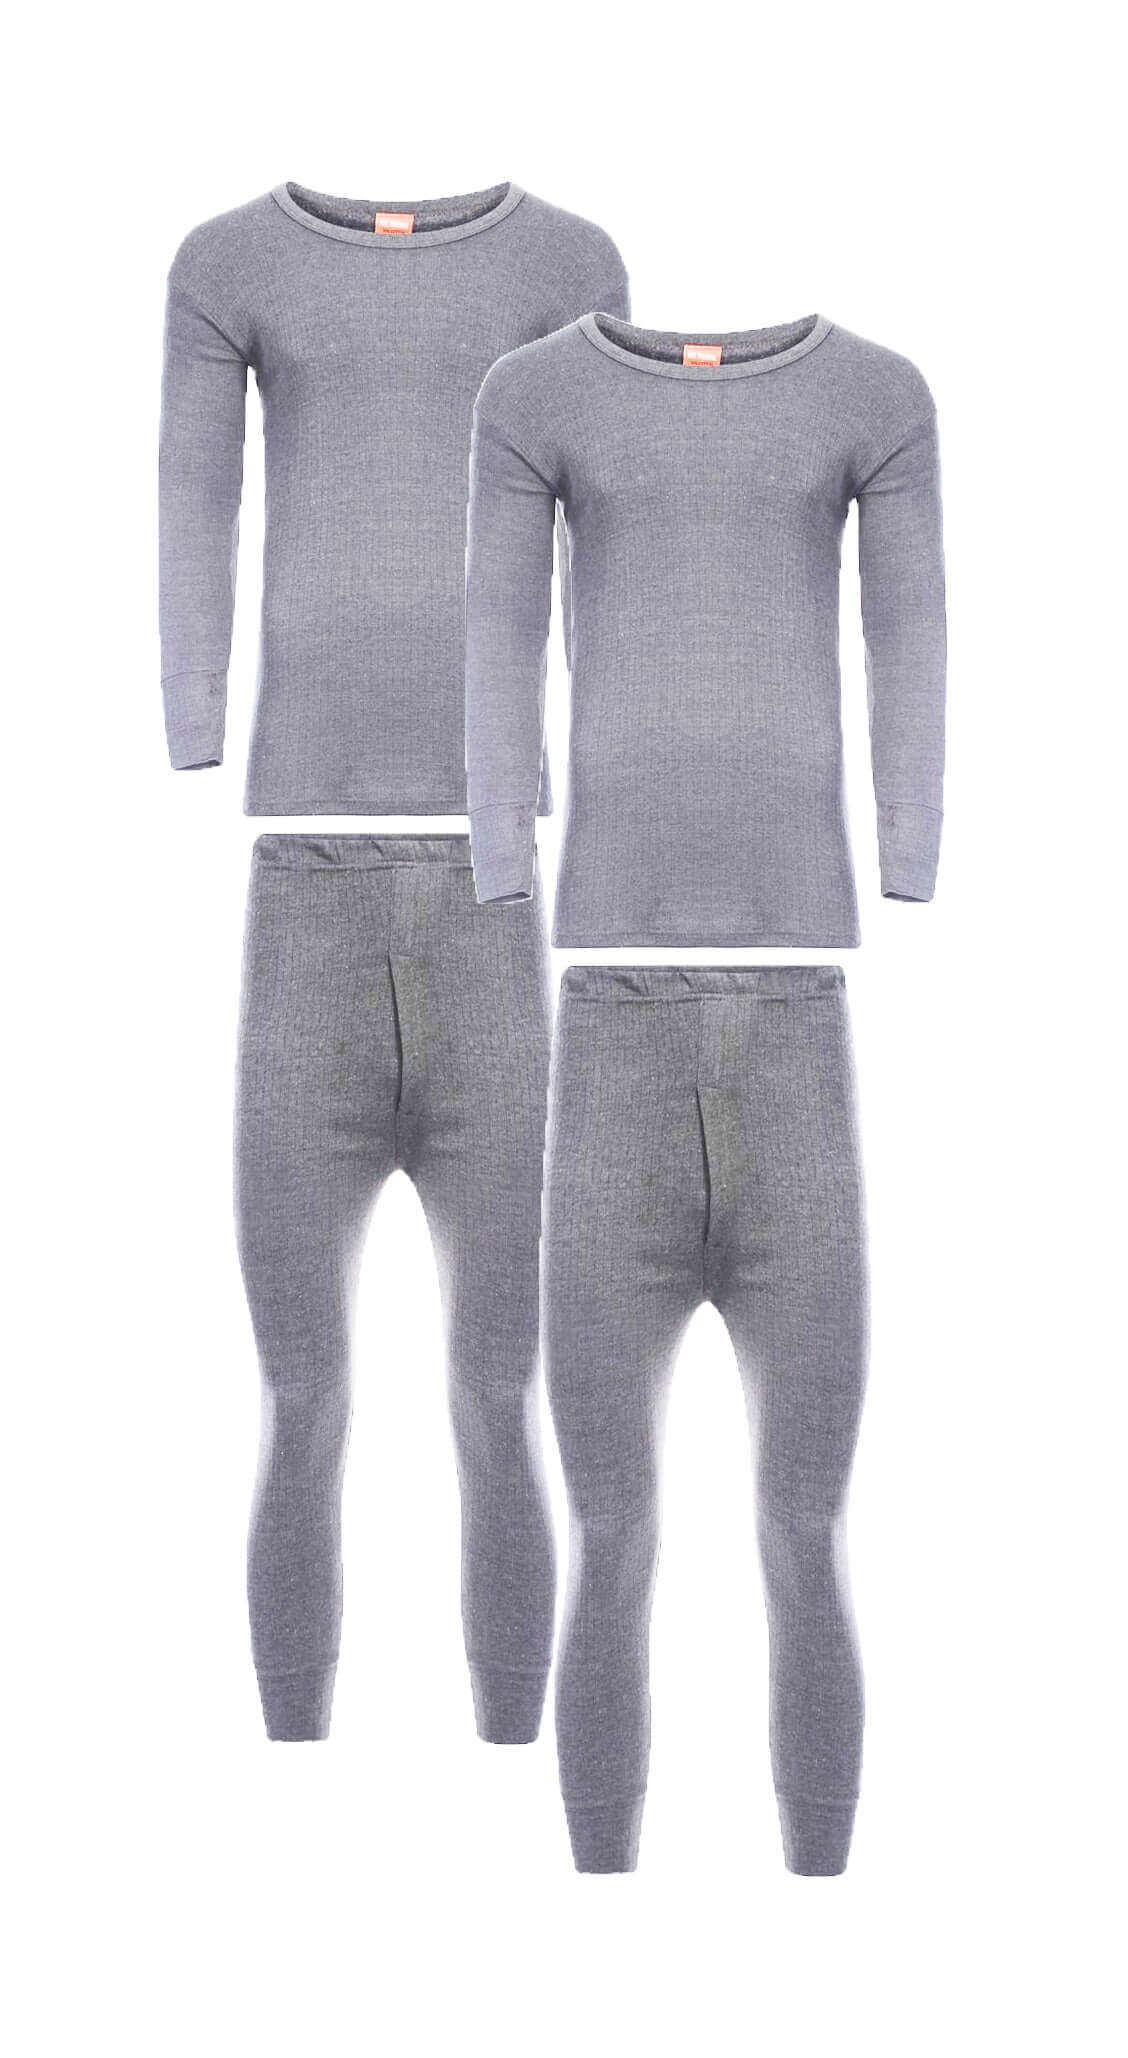 Heatwave® Pack of 2 Men's Thermal Underwear Set, Long Sleeve Top & Long ...